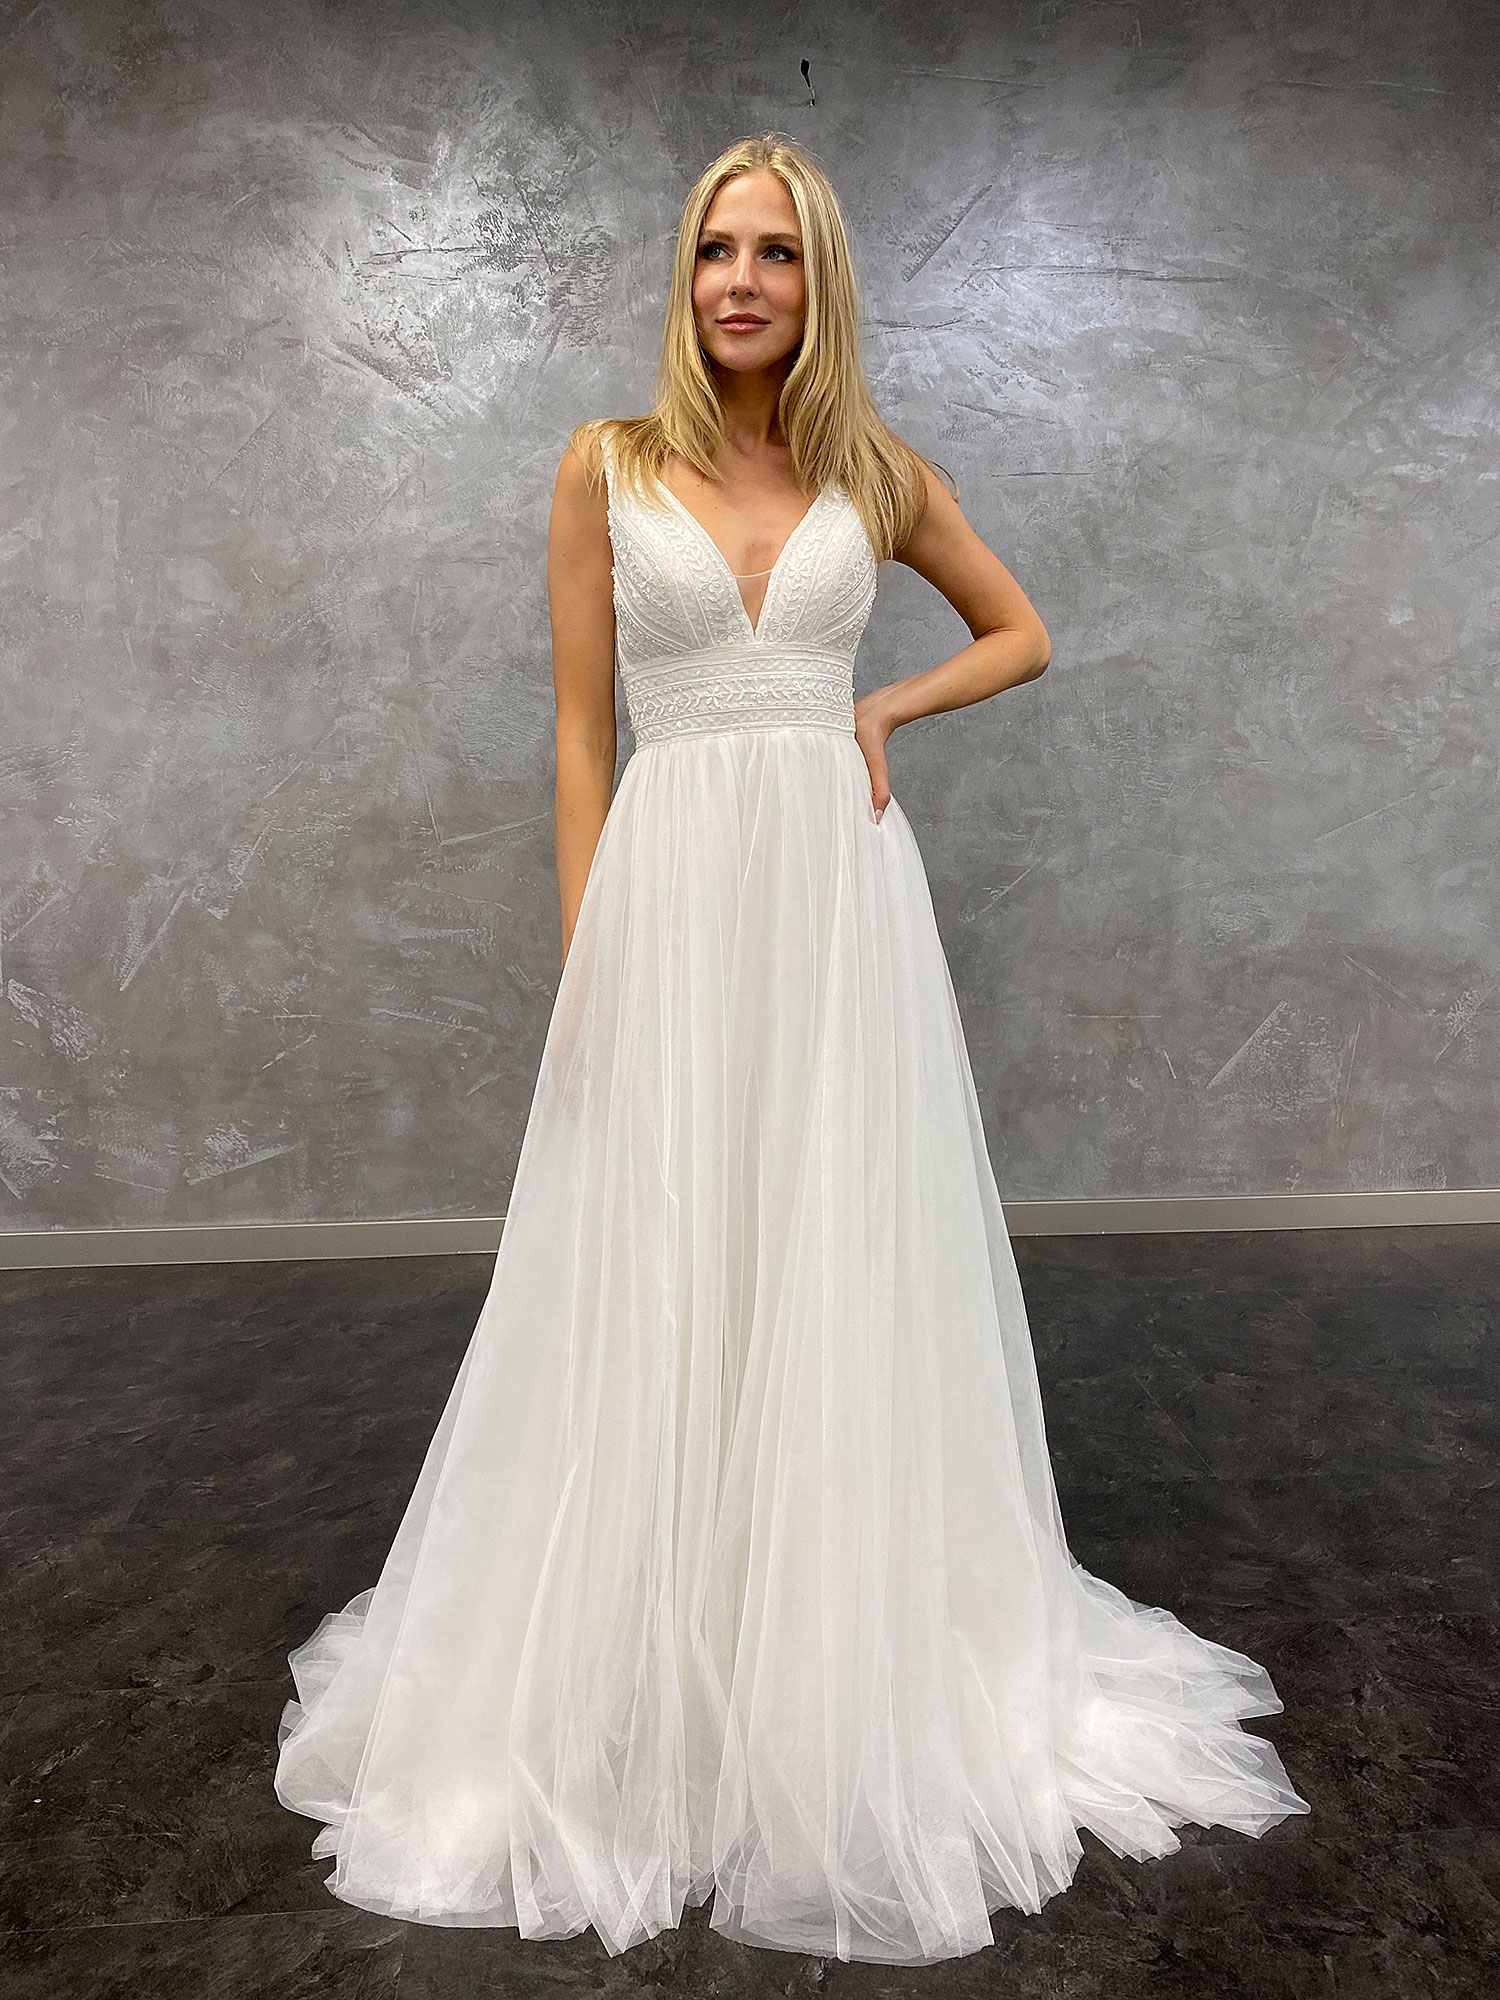 AnnAngelex 2021 Brautkleid B2183 3 Hochzeitskleid Kollektion 2021